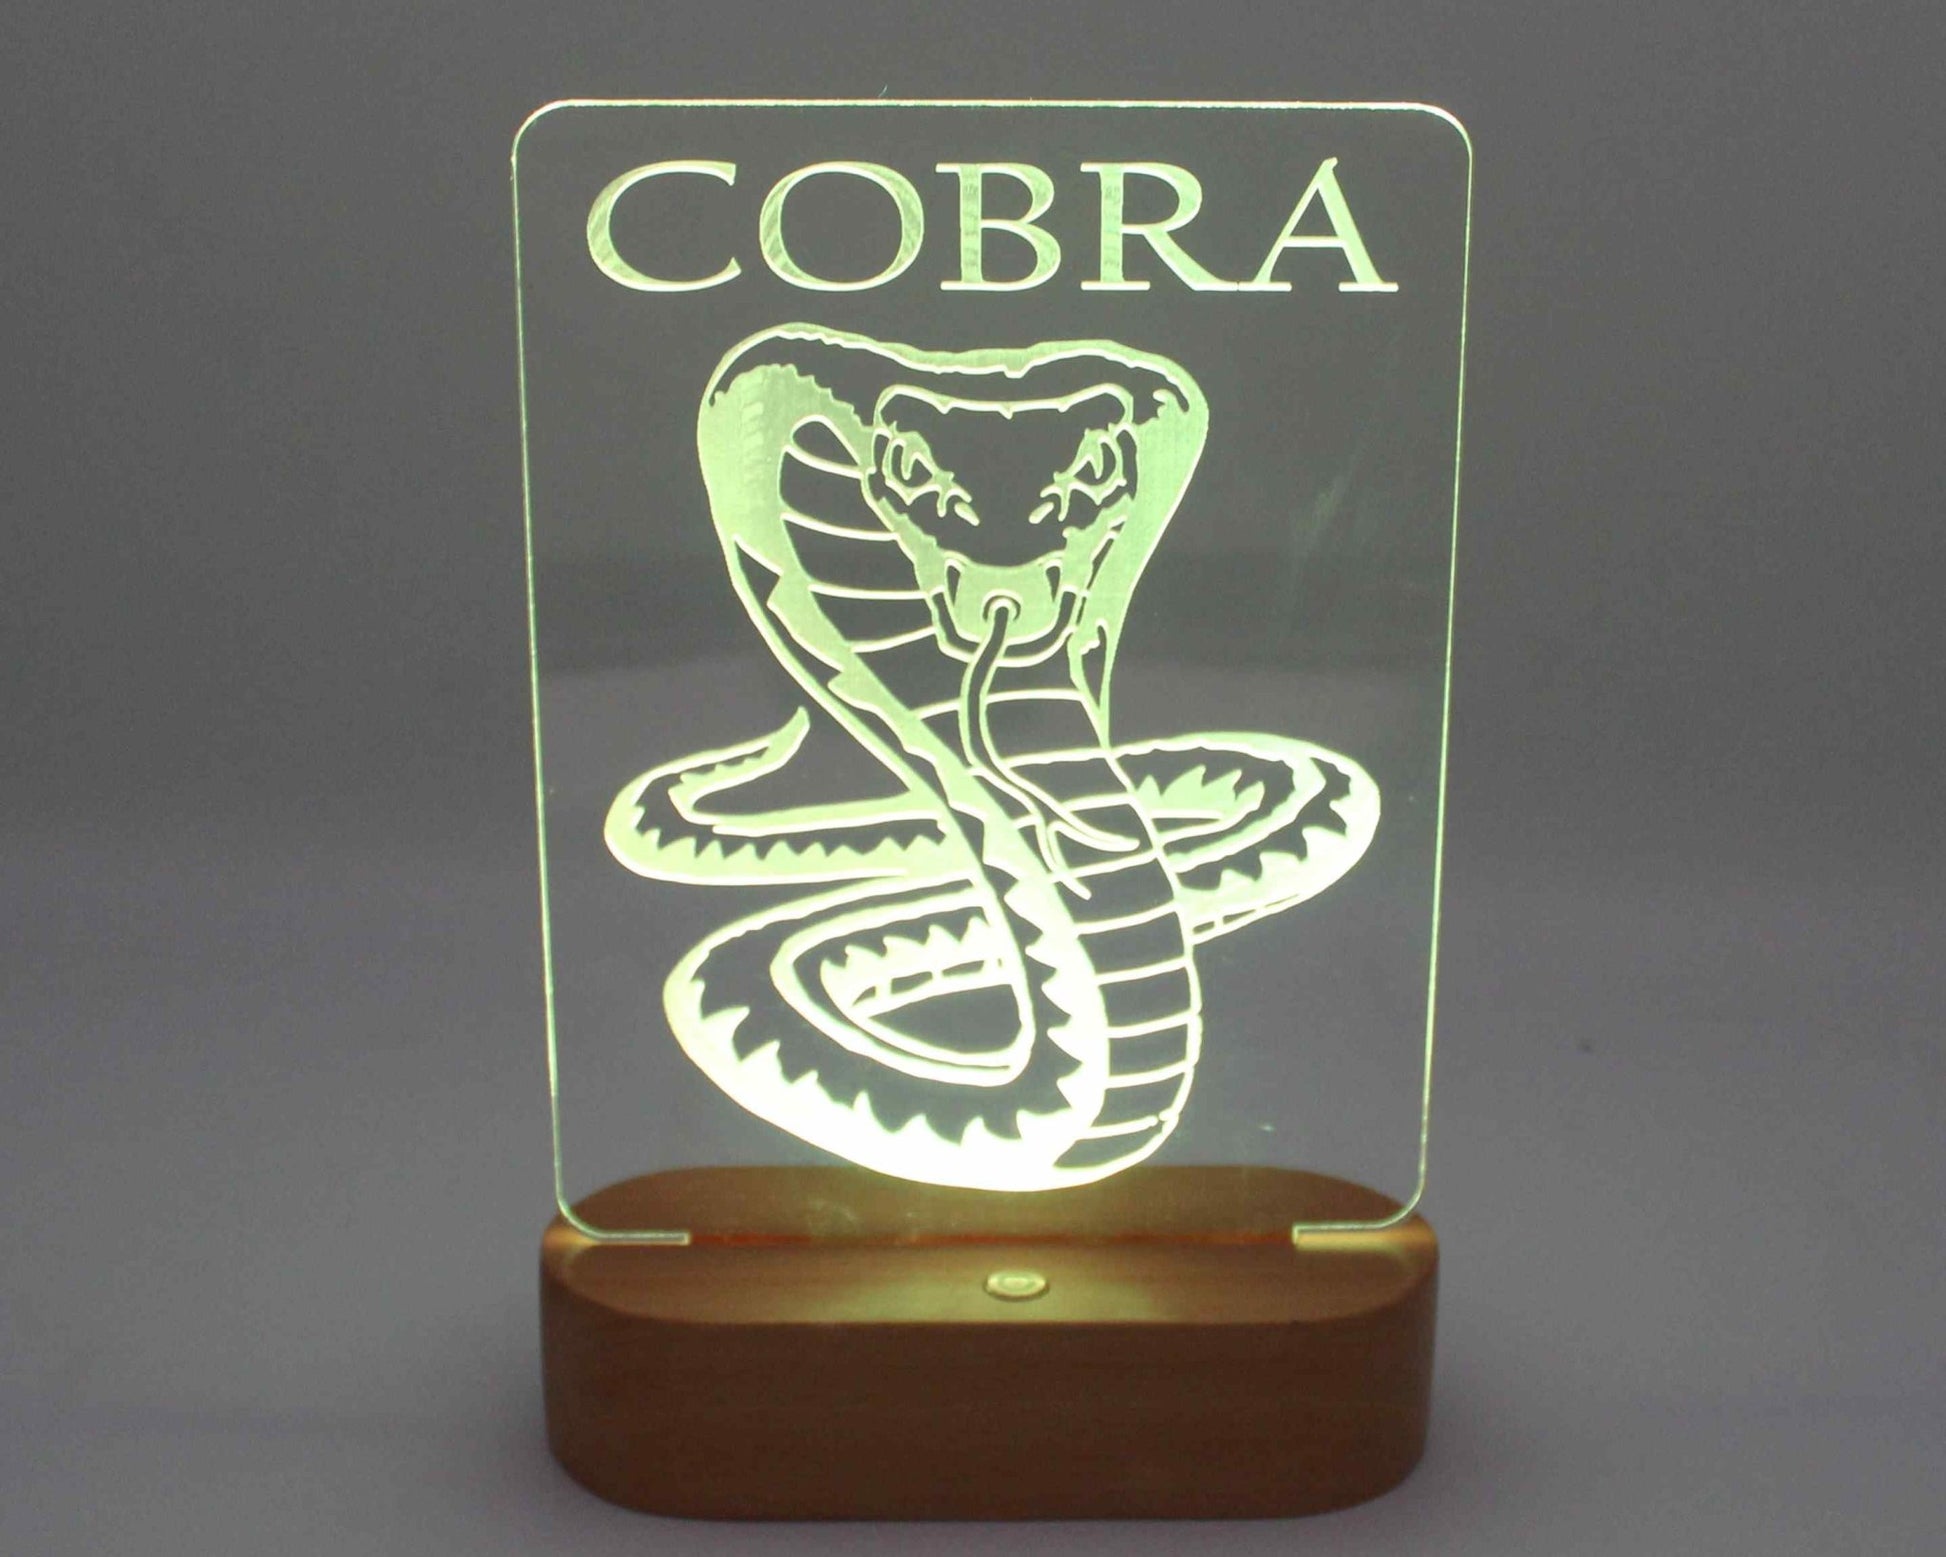 King Cobra Night Light - Haisley Design